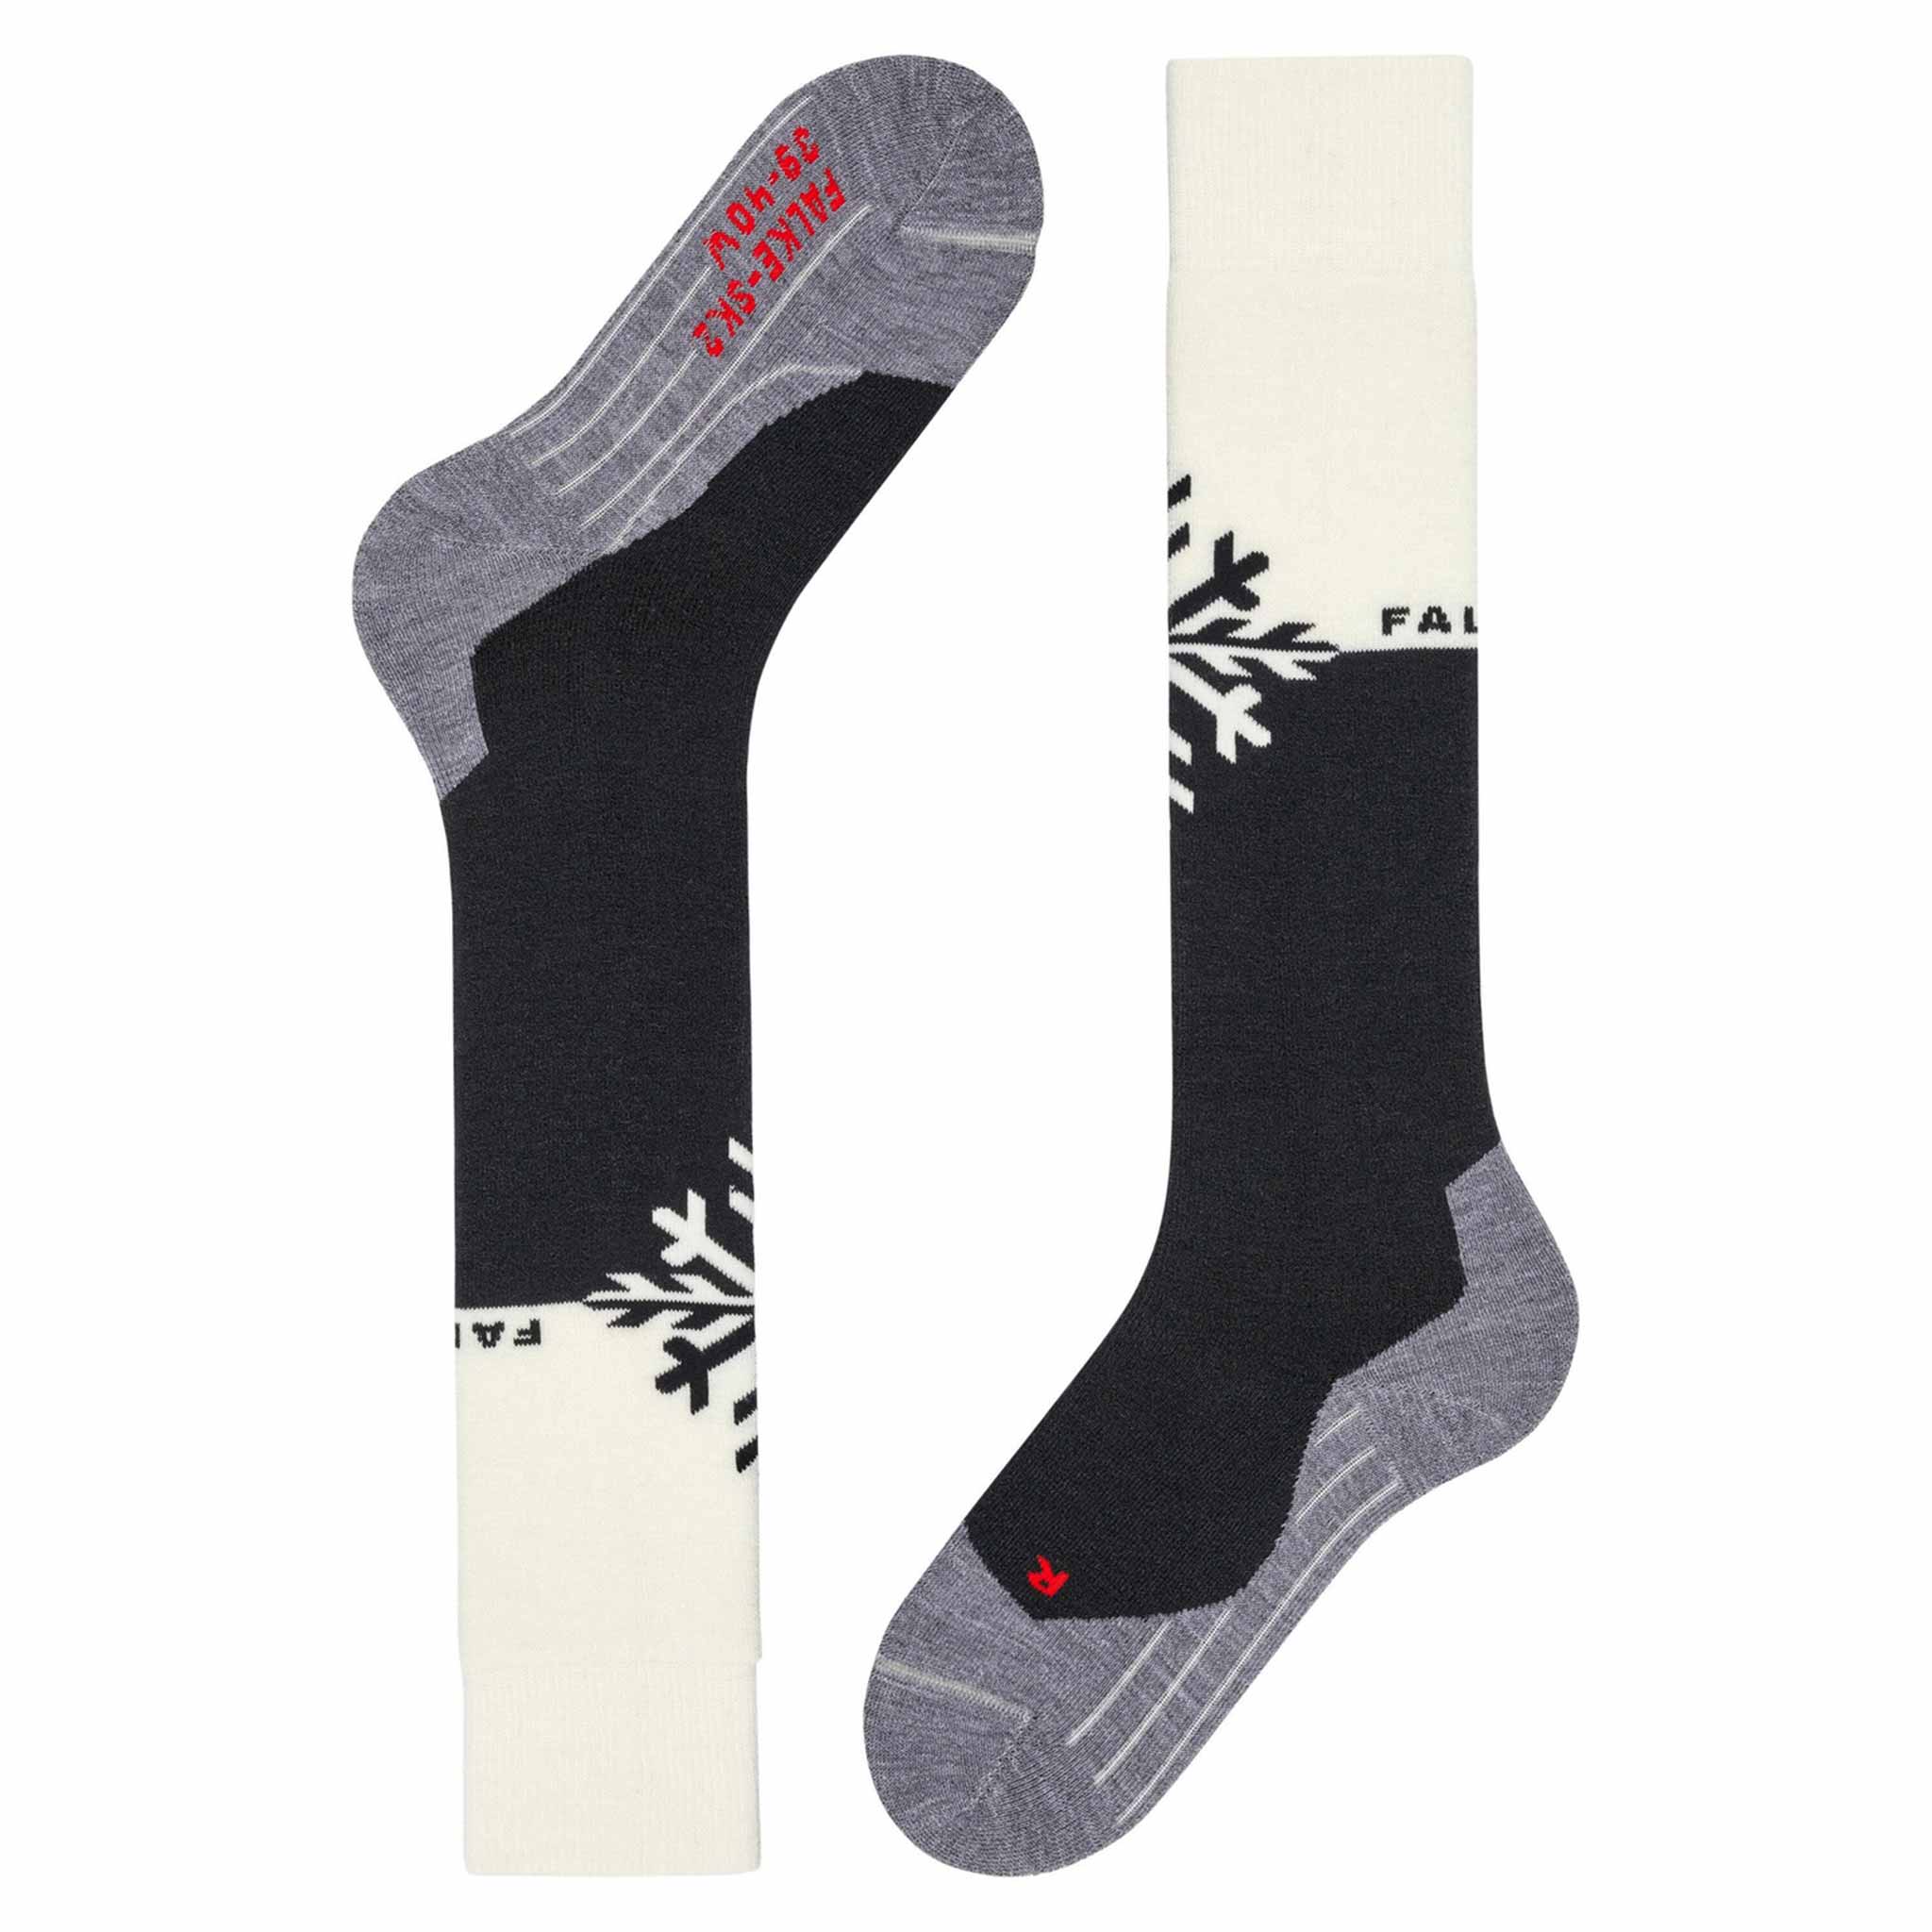 SK2 Women’s Ski Socks in Snowflake Black